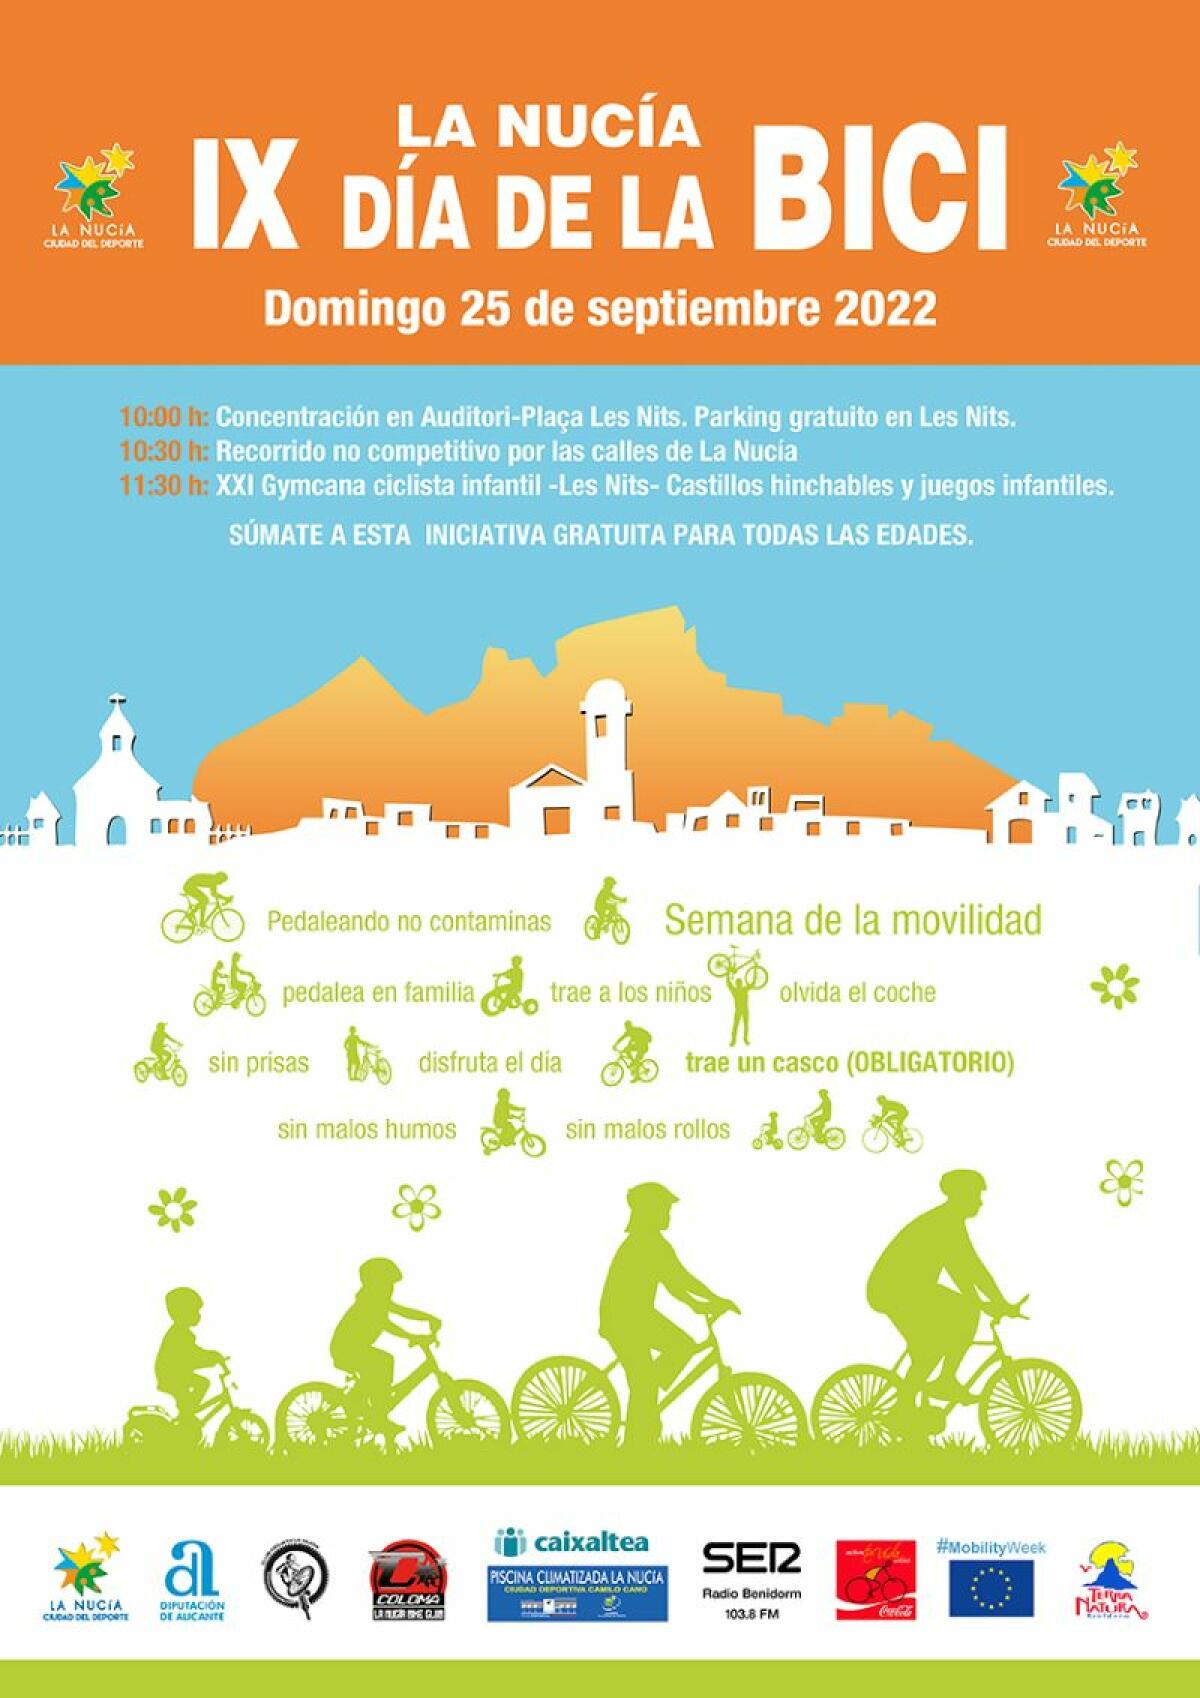 El “IX Día de la Bici” será el 25 de septiembre